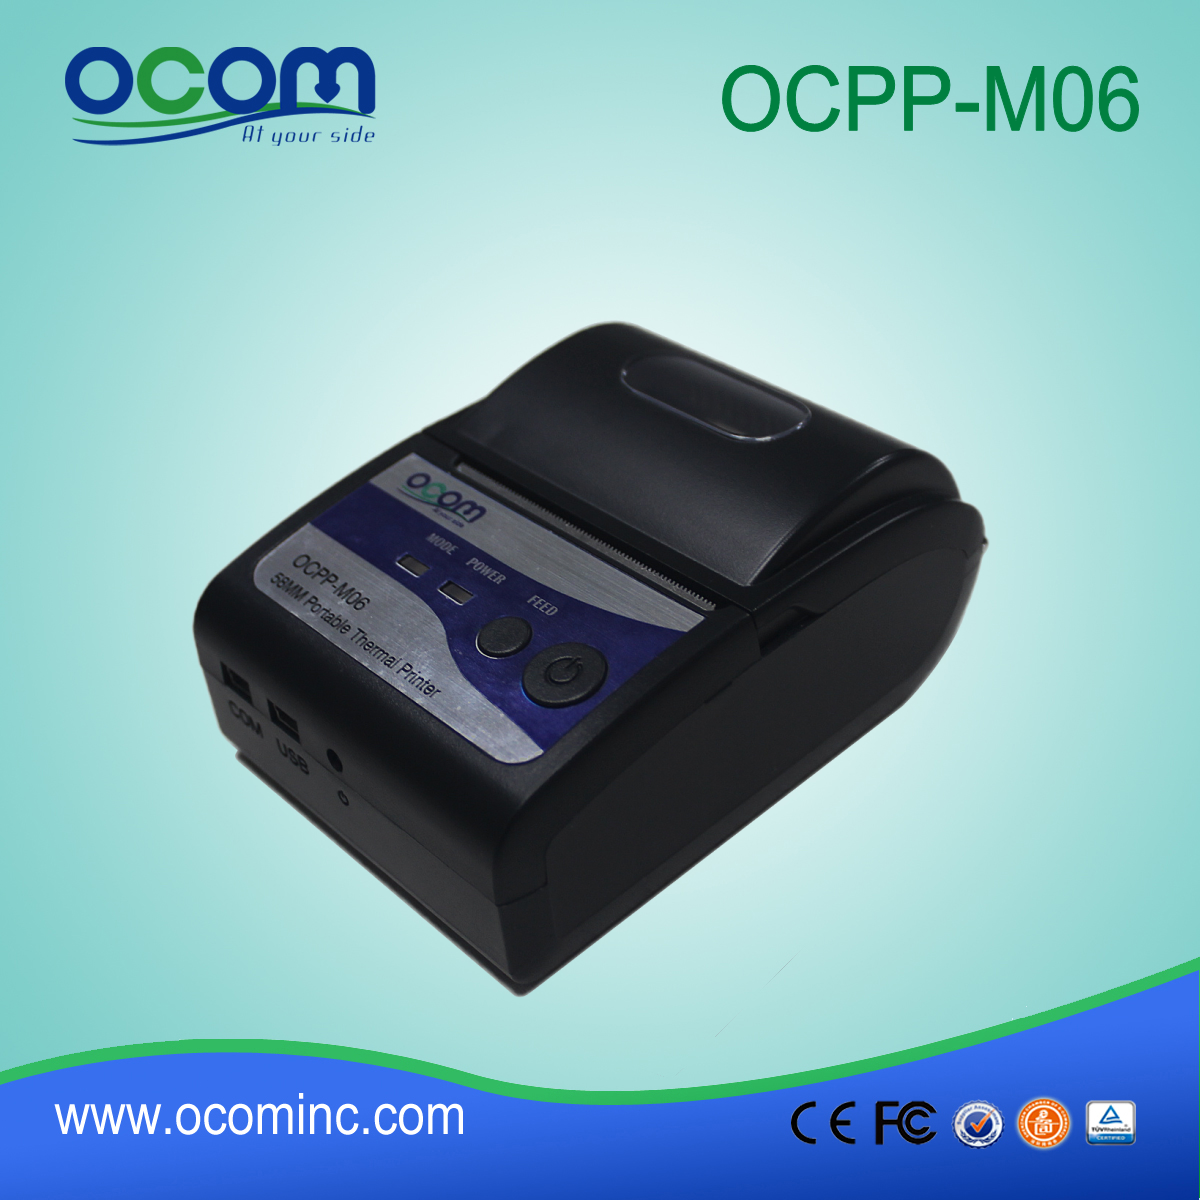 OCPP-M06: China gemaakt van goede kwaliteit OCOM 58mm pos thermische printer printer